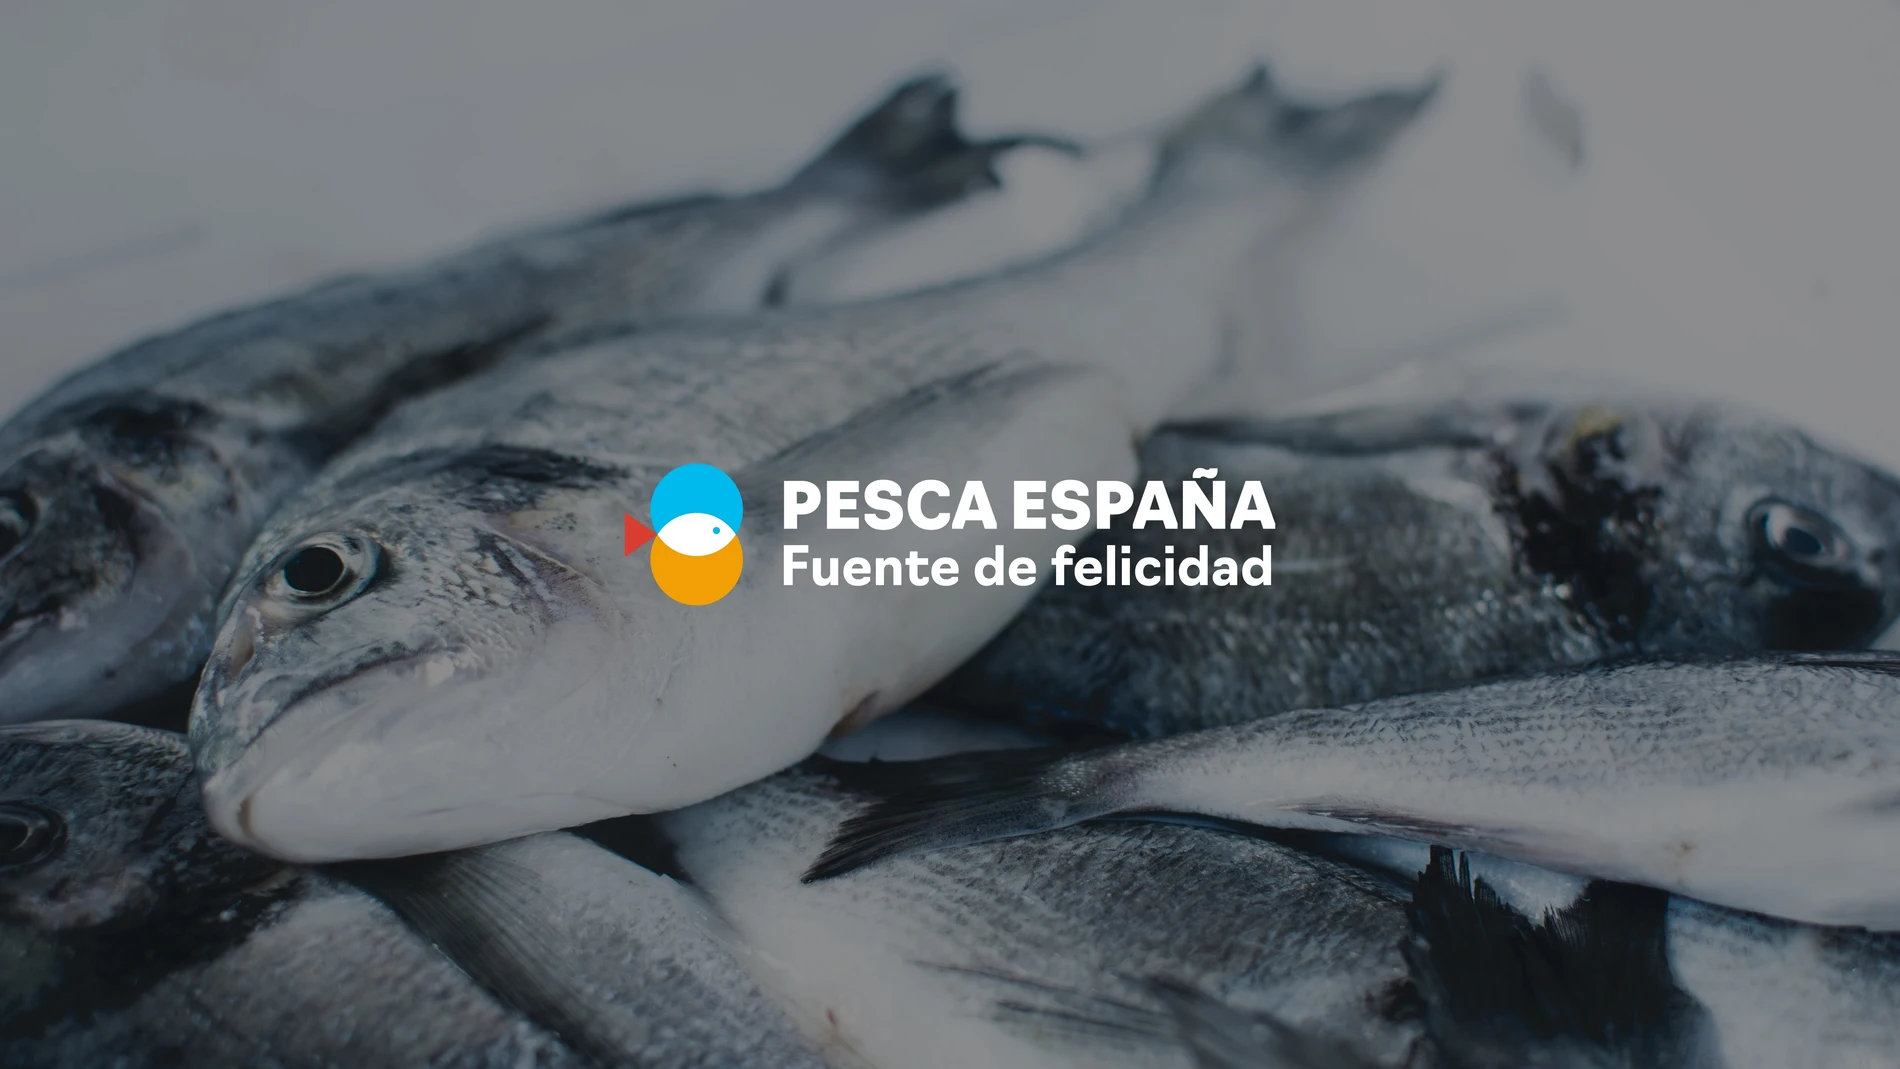 Imagen de campaña de Pesca España